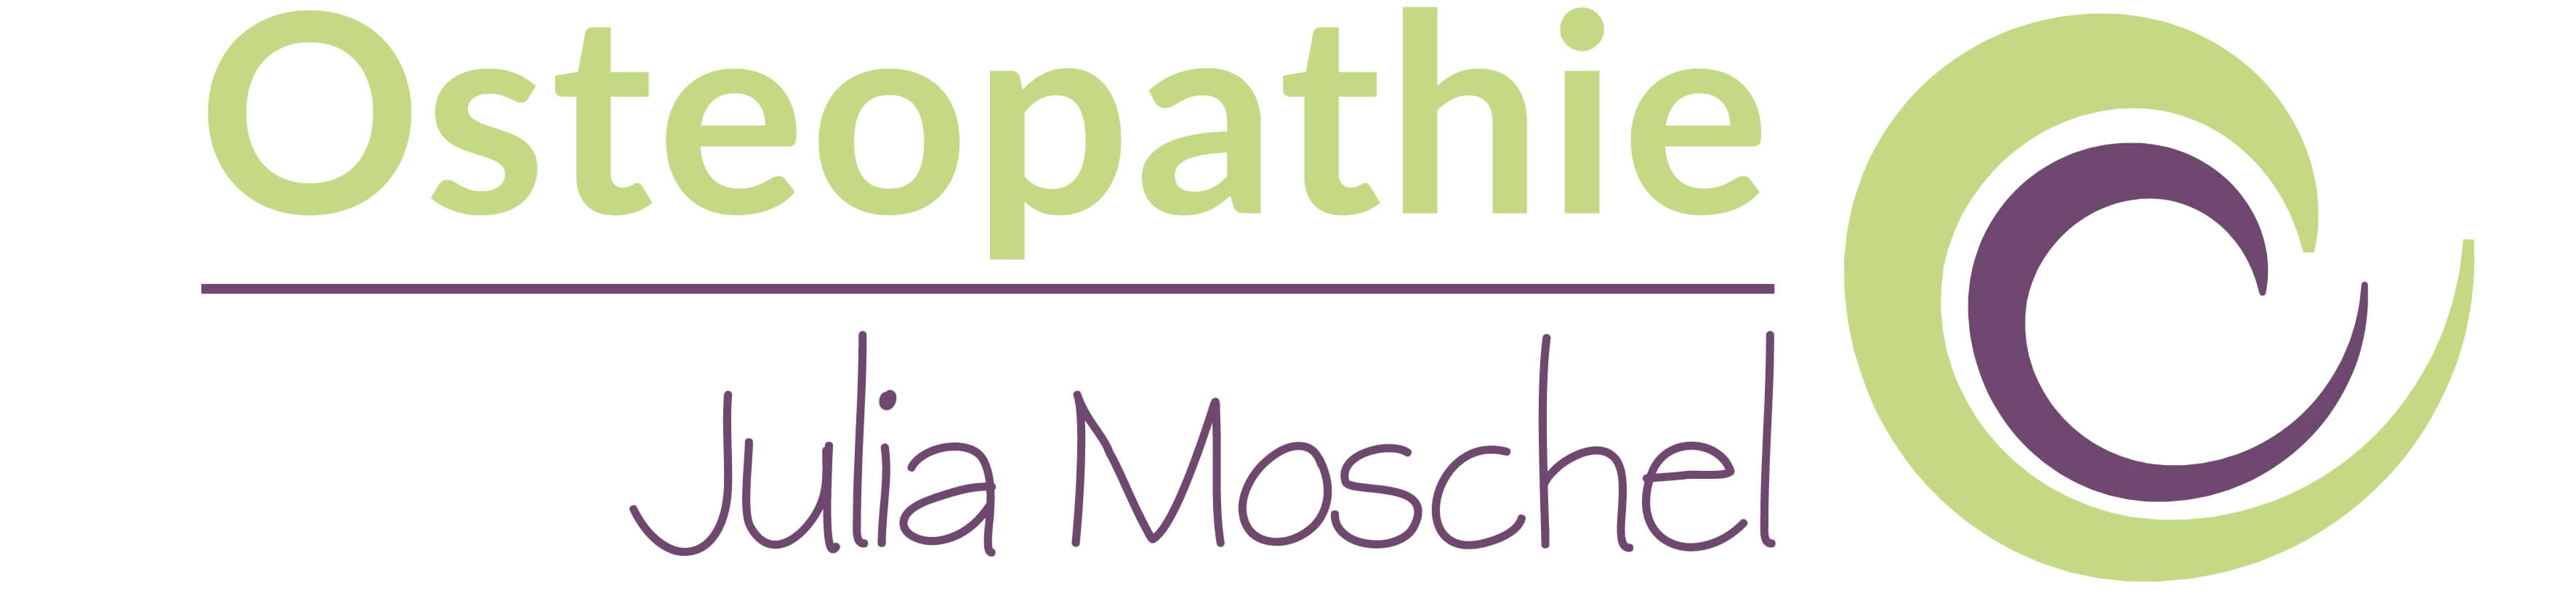 Osteopathie Moschel